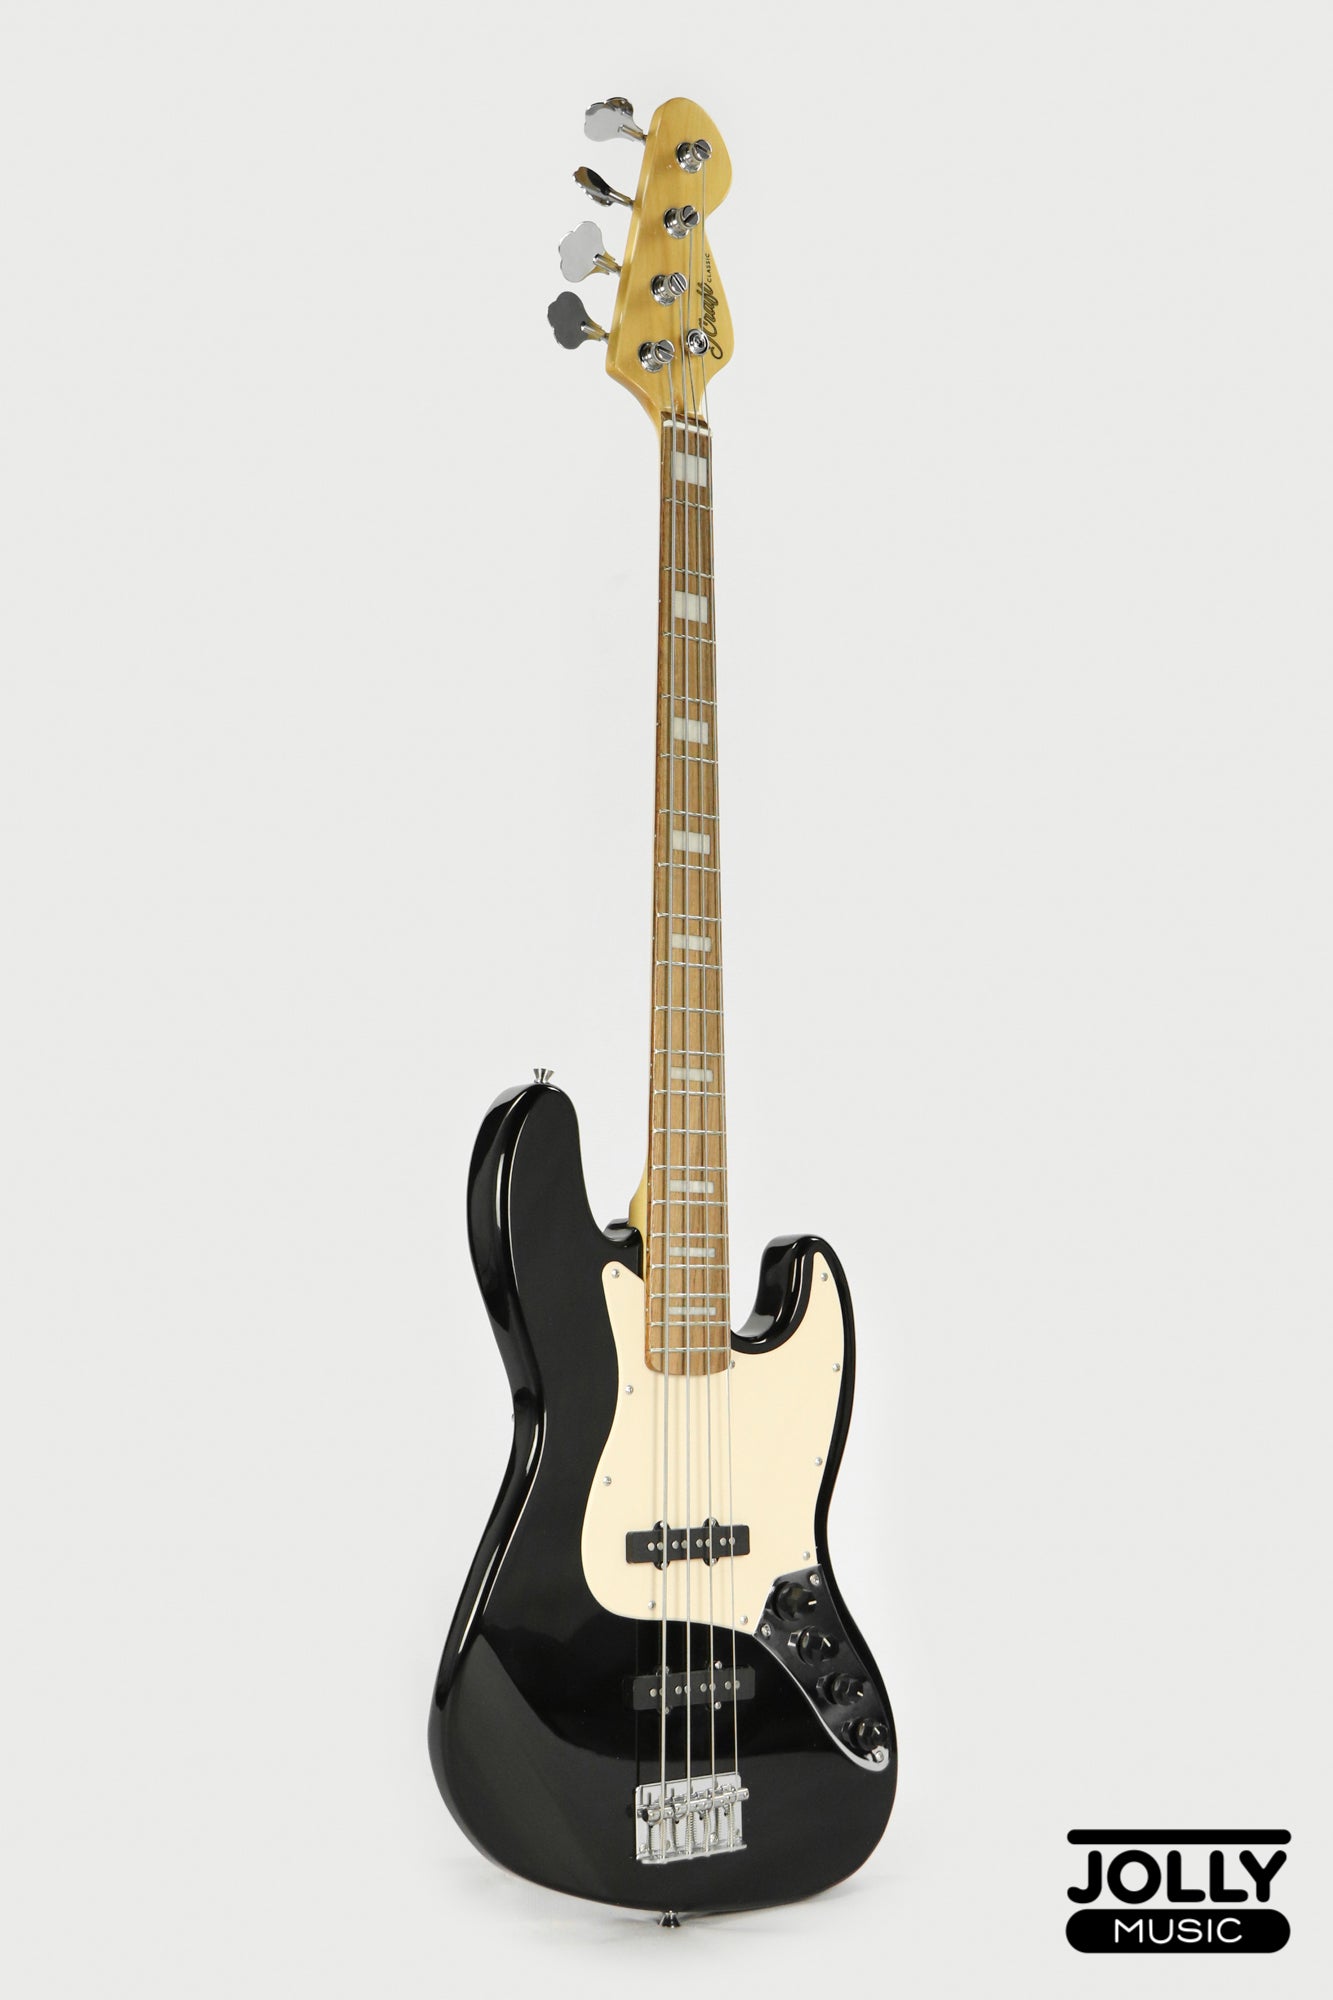 JCraft JB-2A J-Offset 4-String Bass Guitar - Black